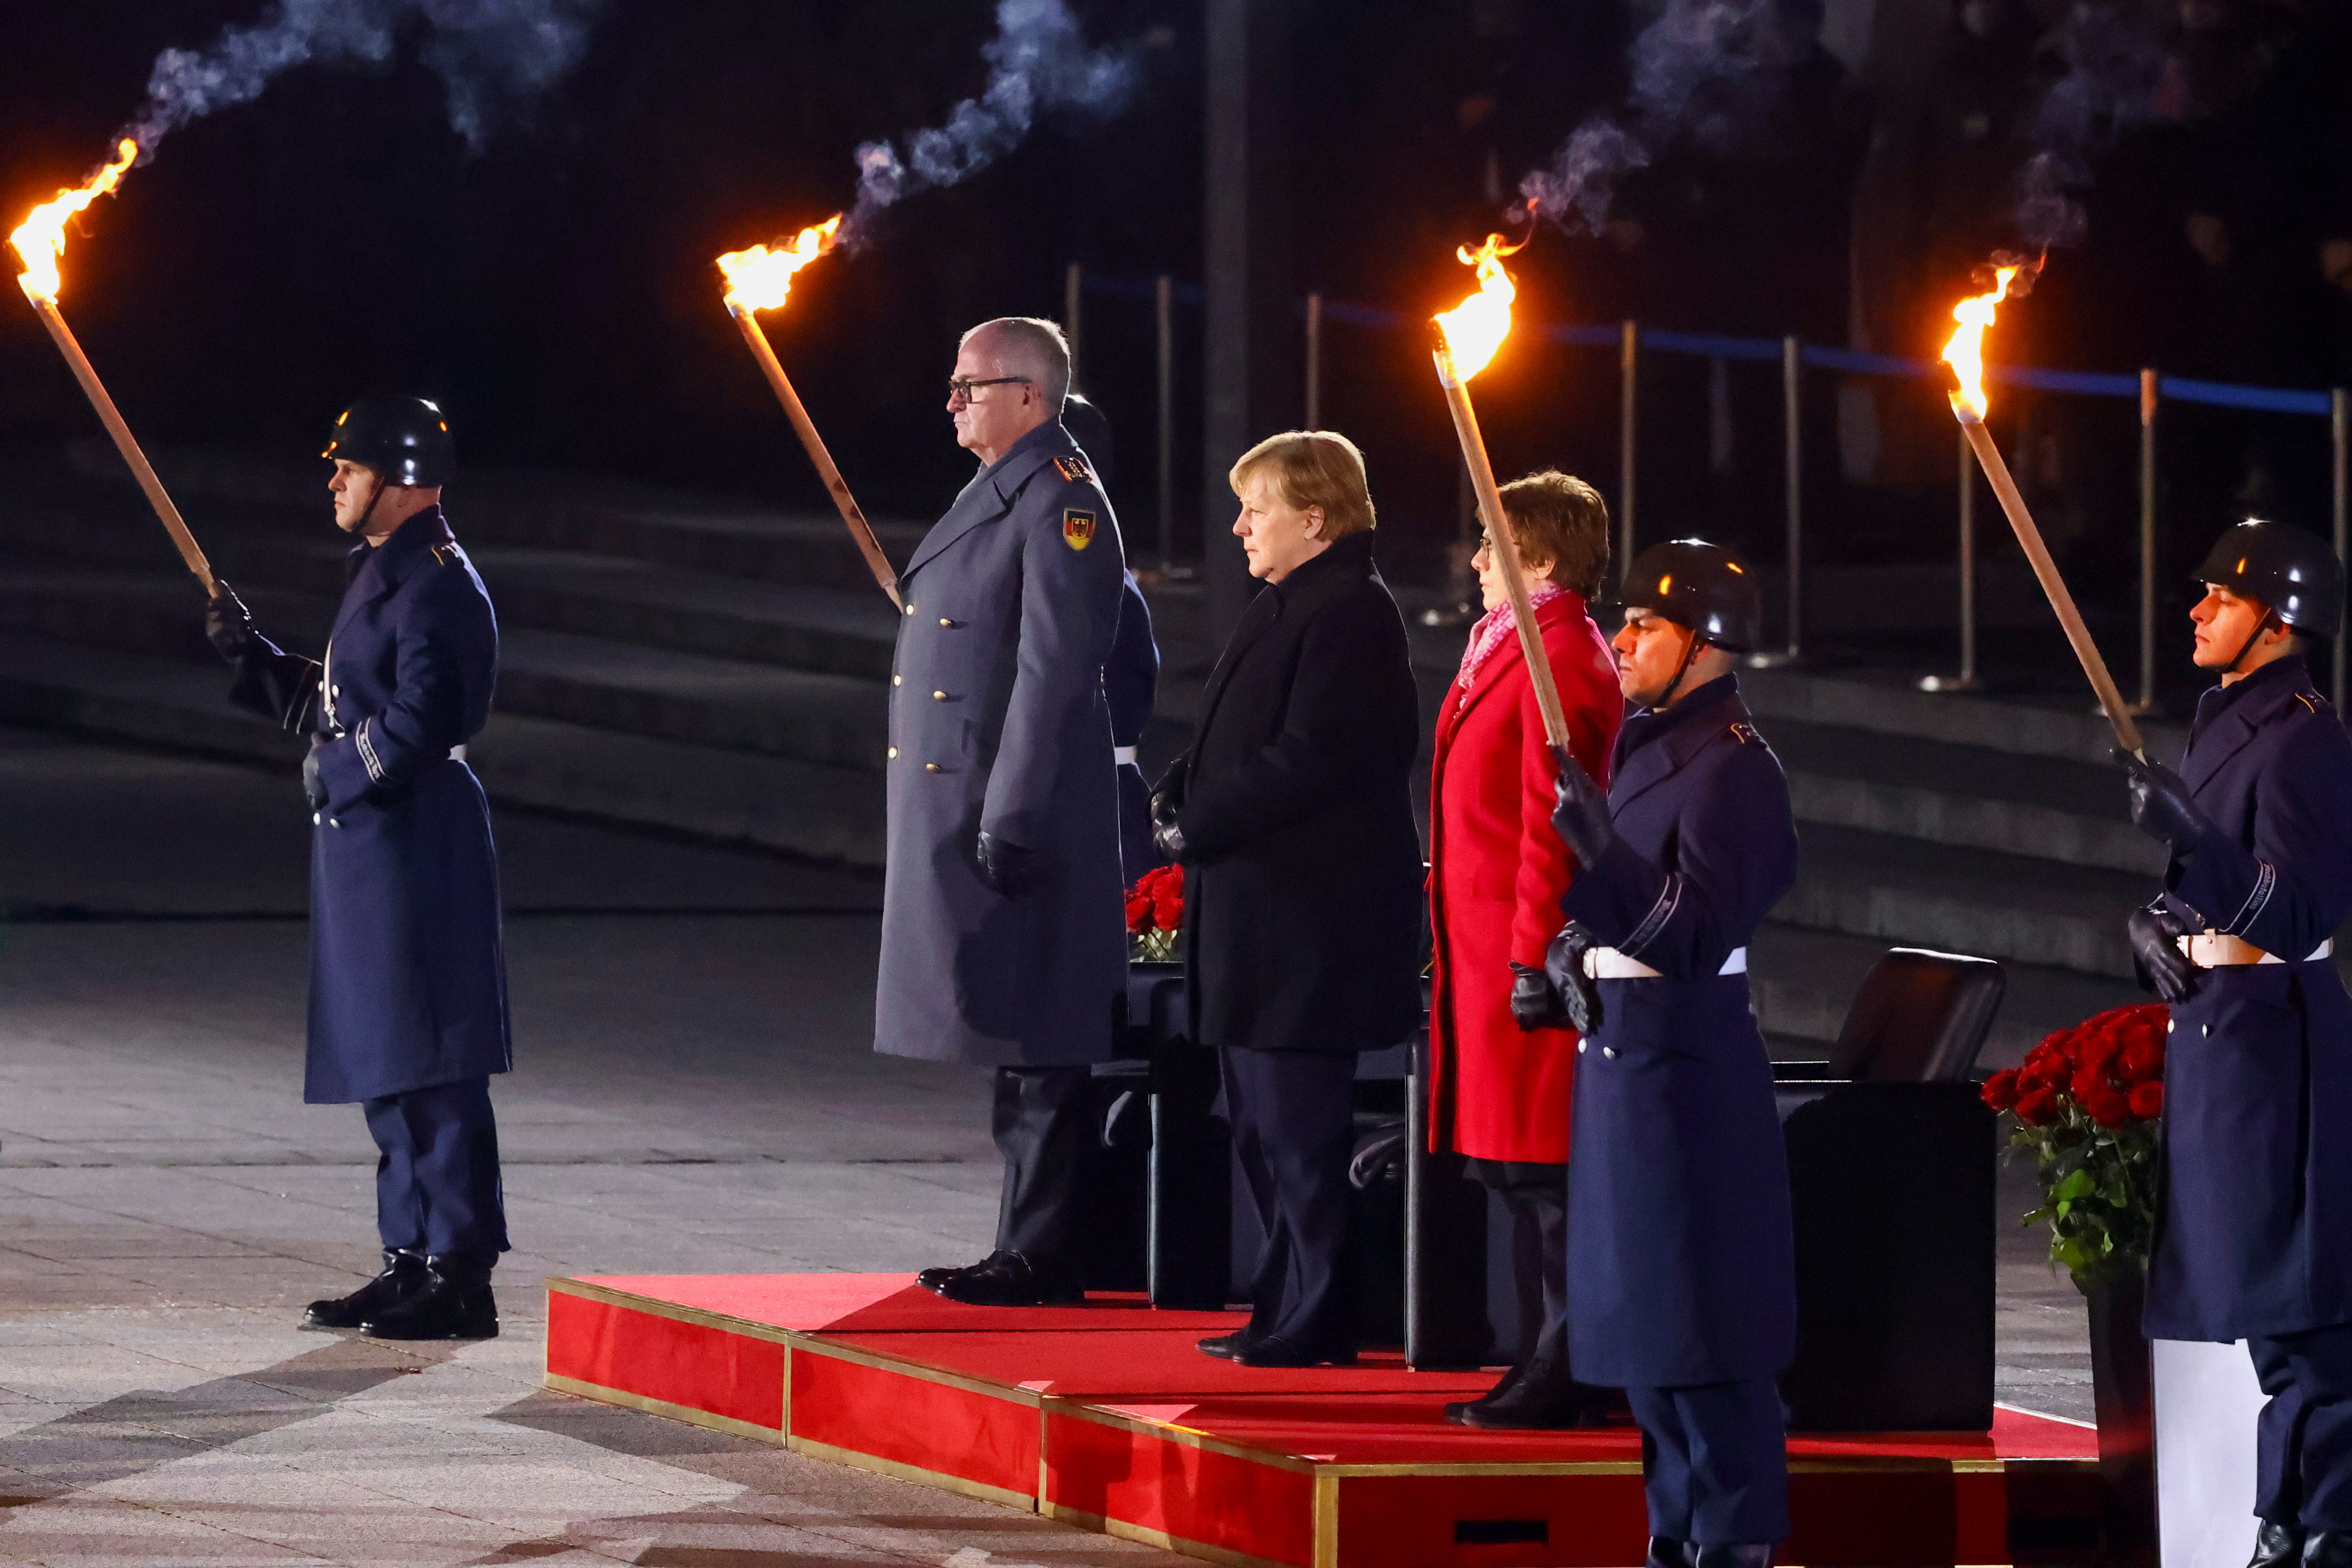 Angela Merkel presenció el desfile militar rodeada por las autoridades de Defensa de su país (REUTERS/Fabrizio Bensch)